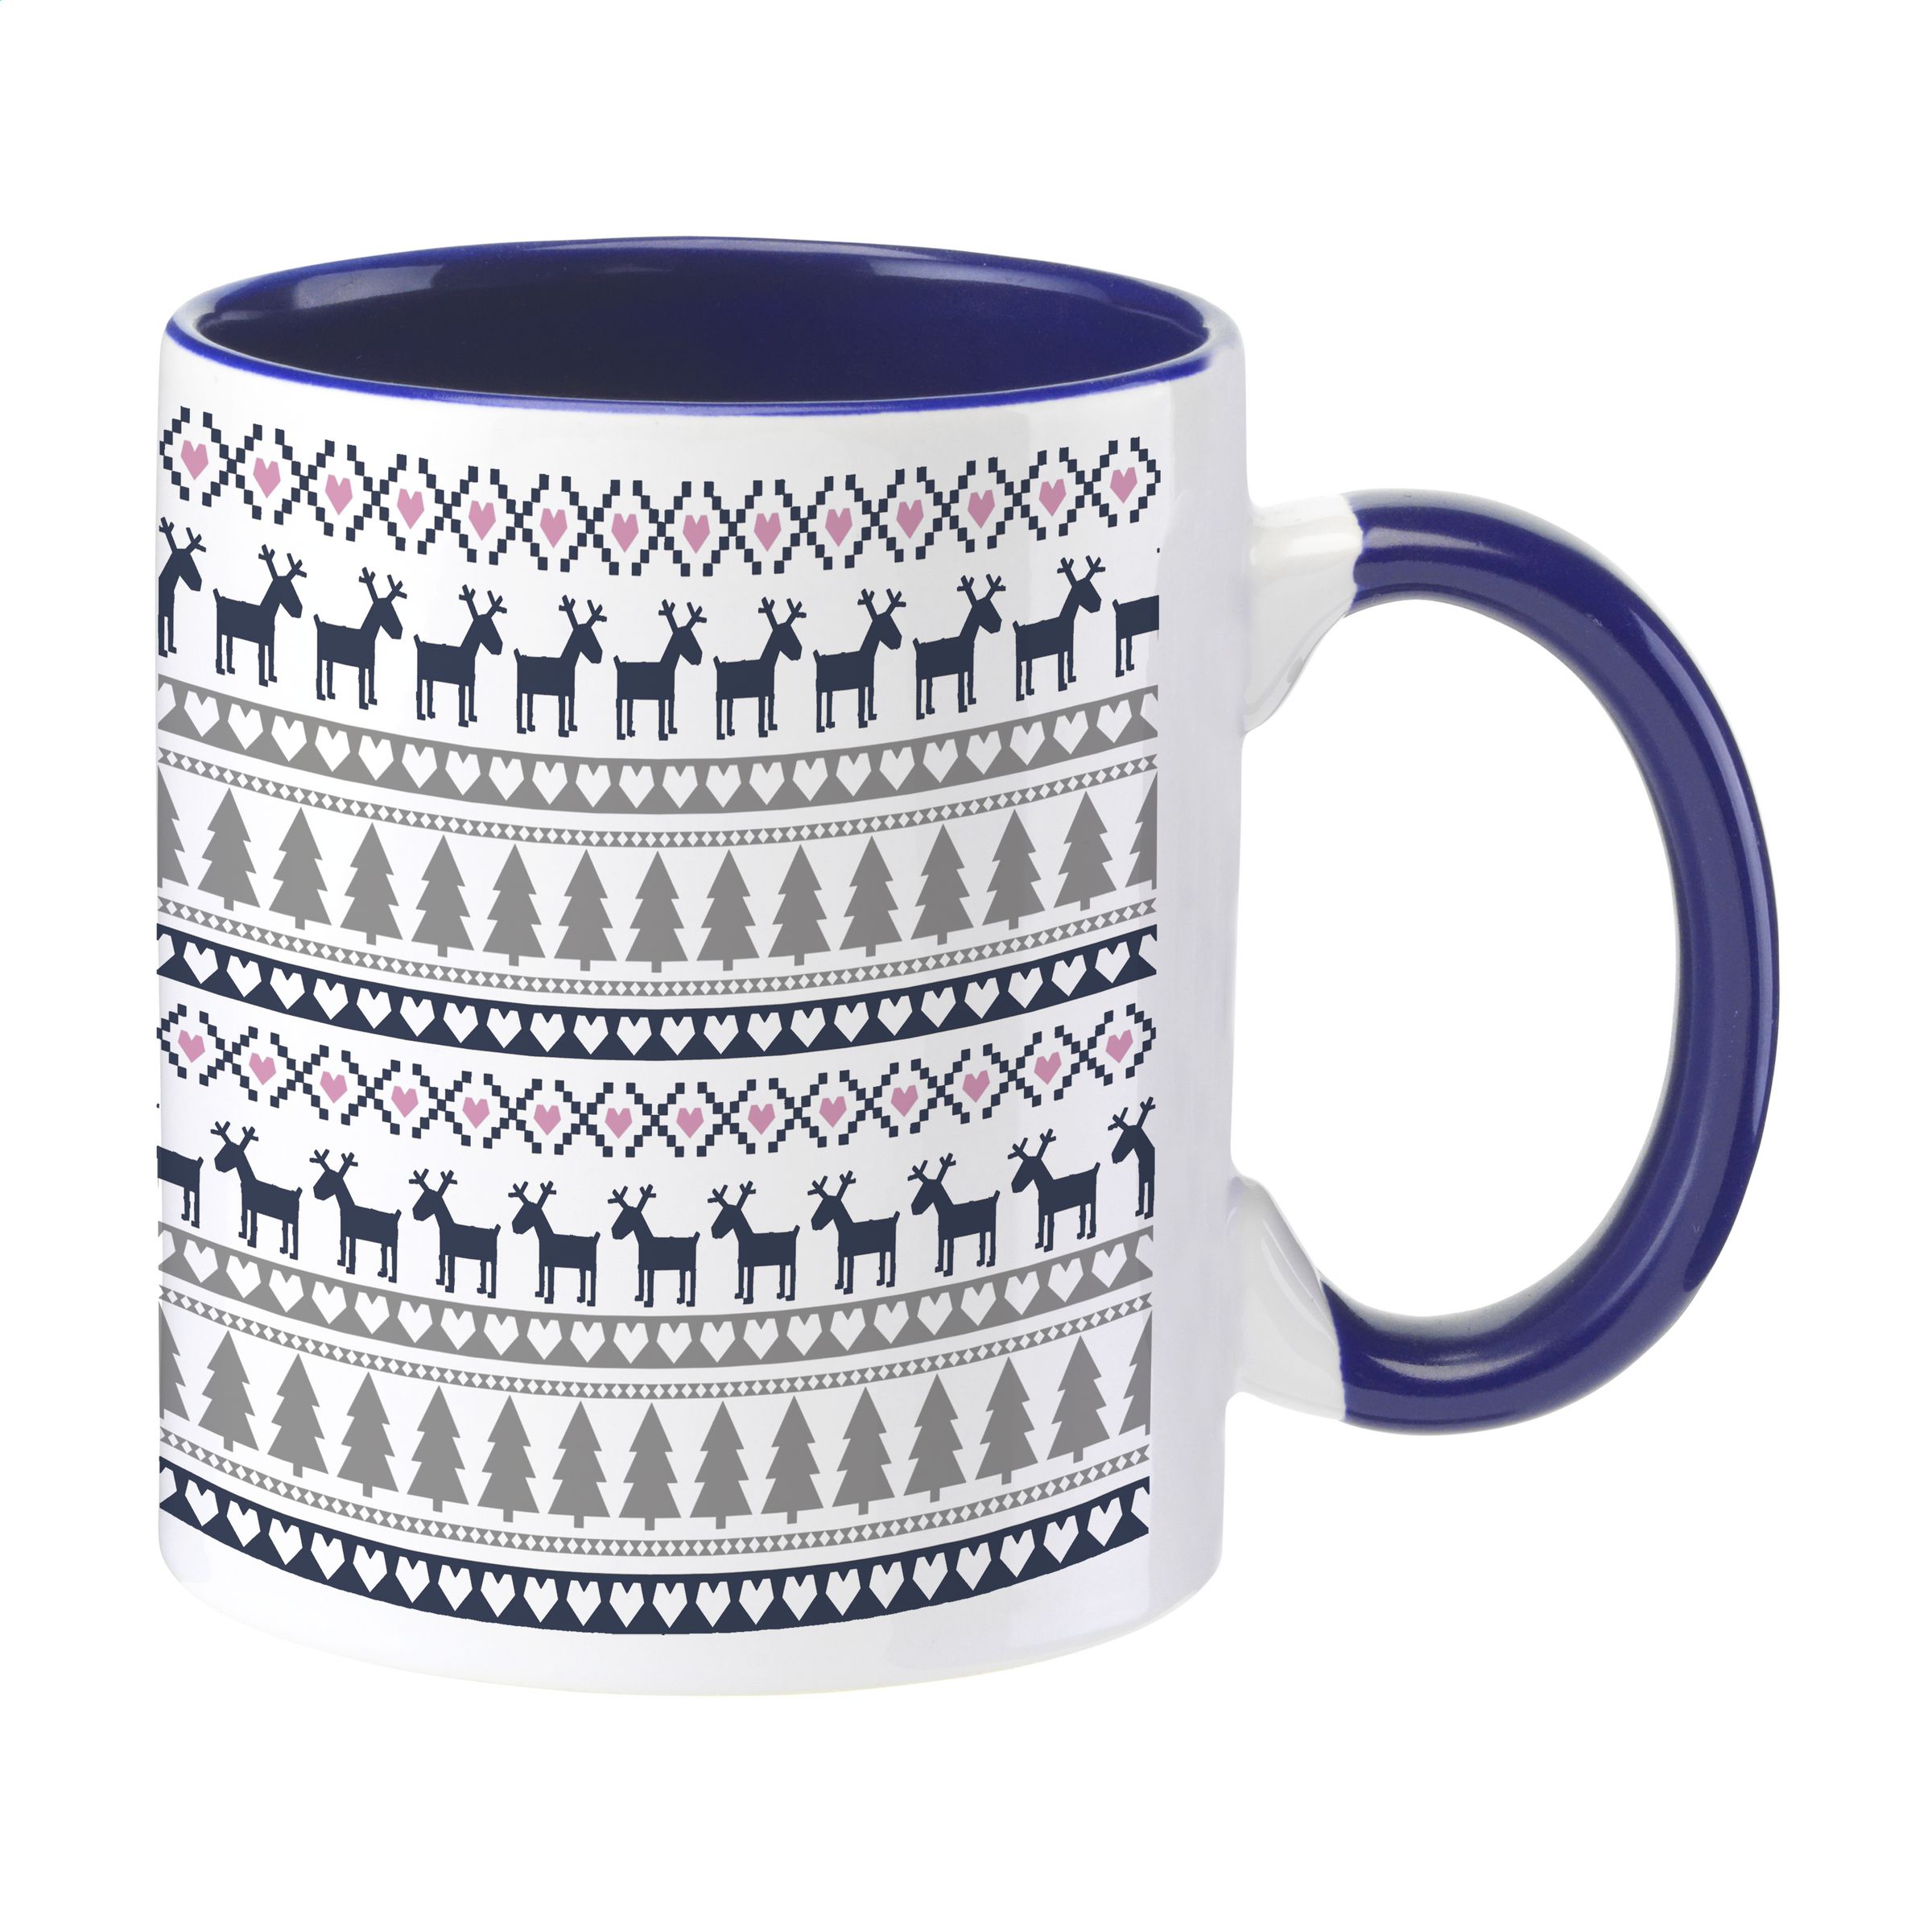 Colourful Ceramic Mug - Hale